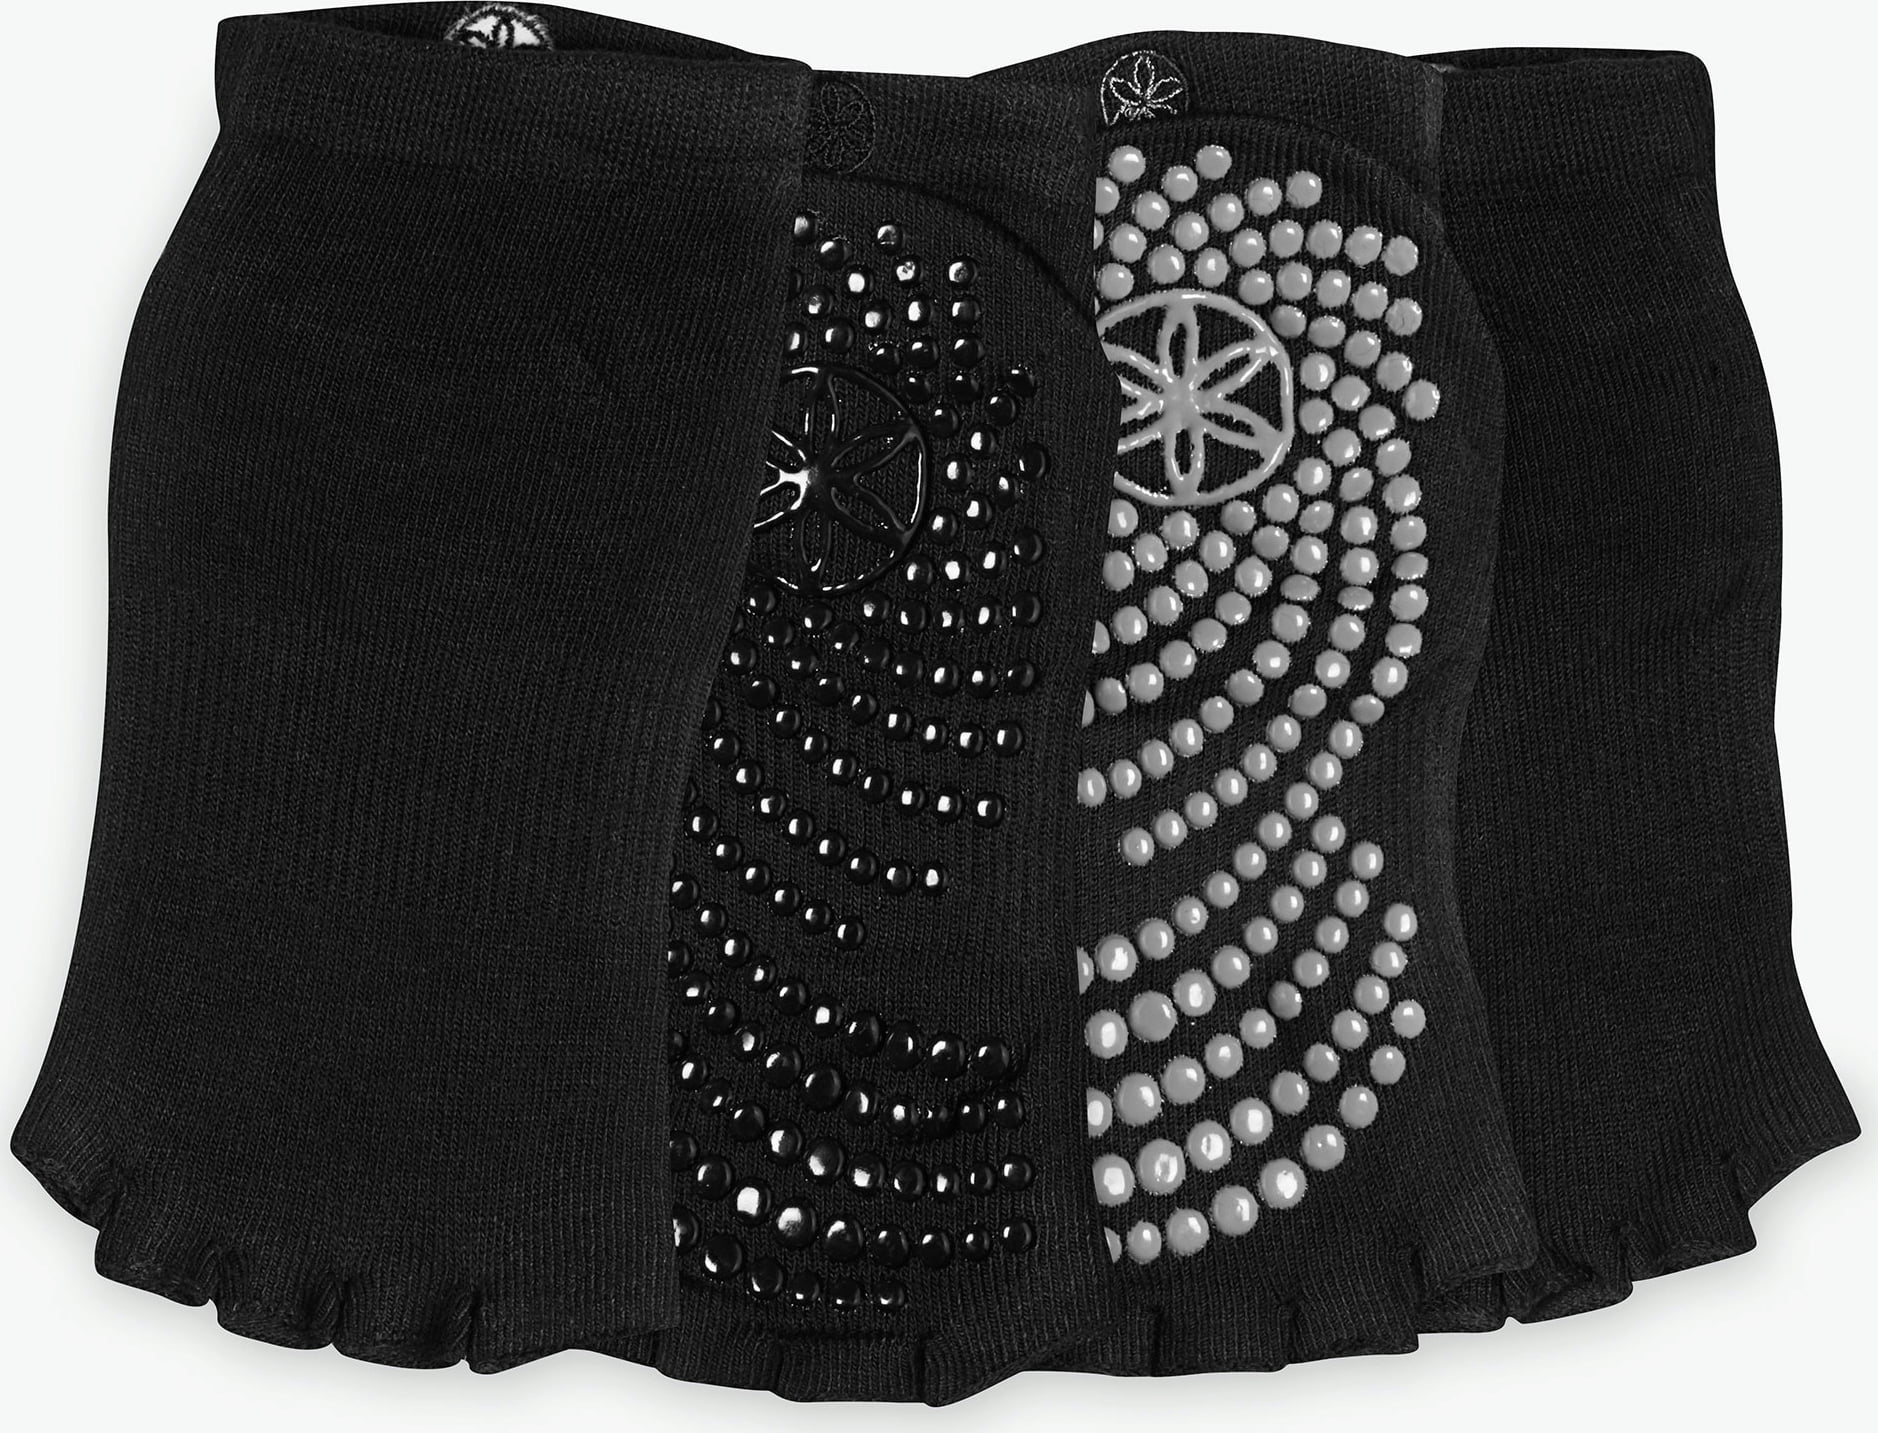 Toeless Grippy Yoga Socks, Black - Double Pack Black